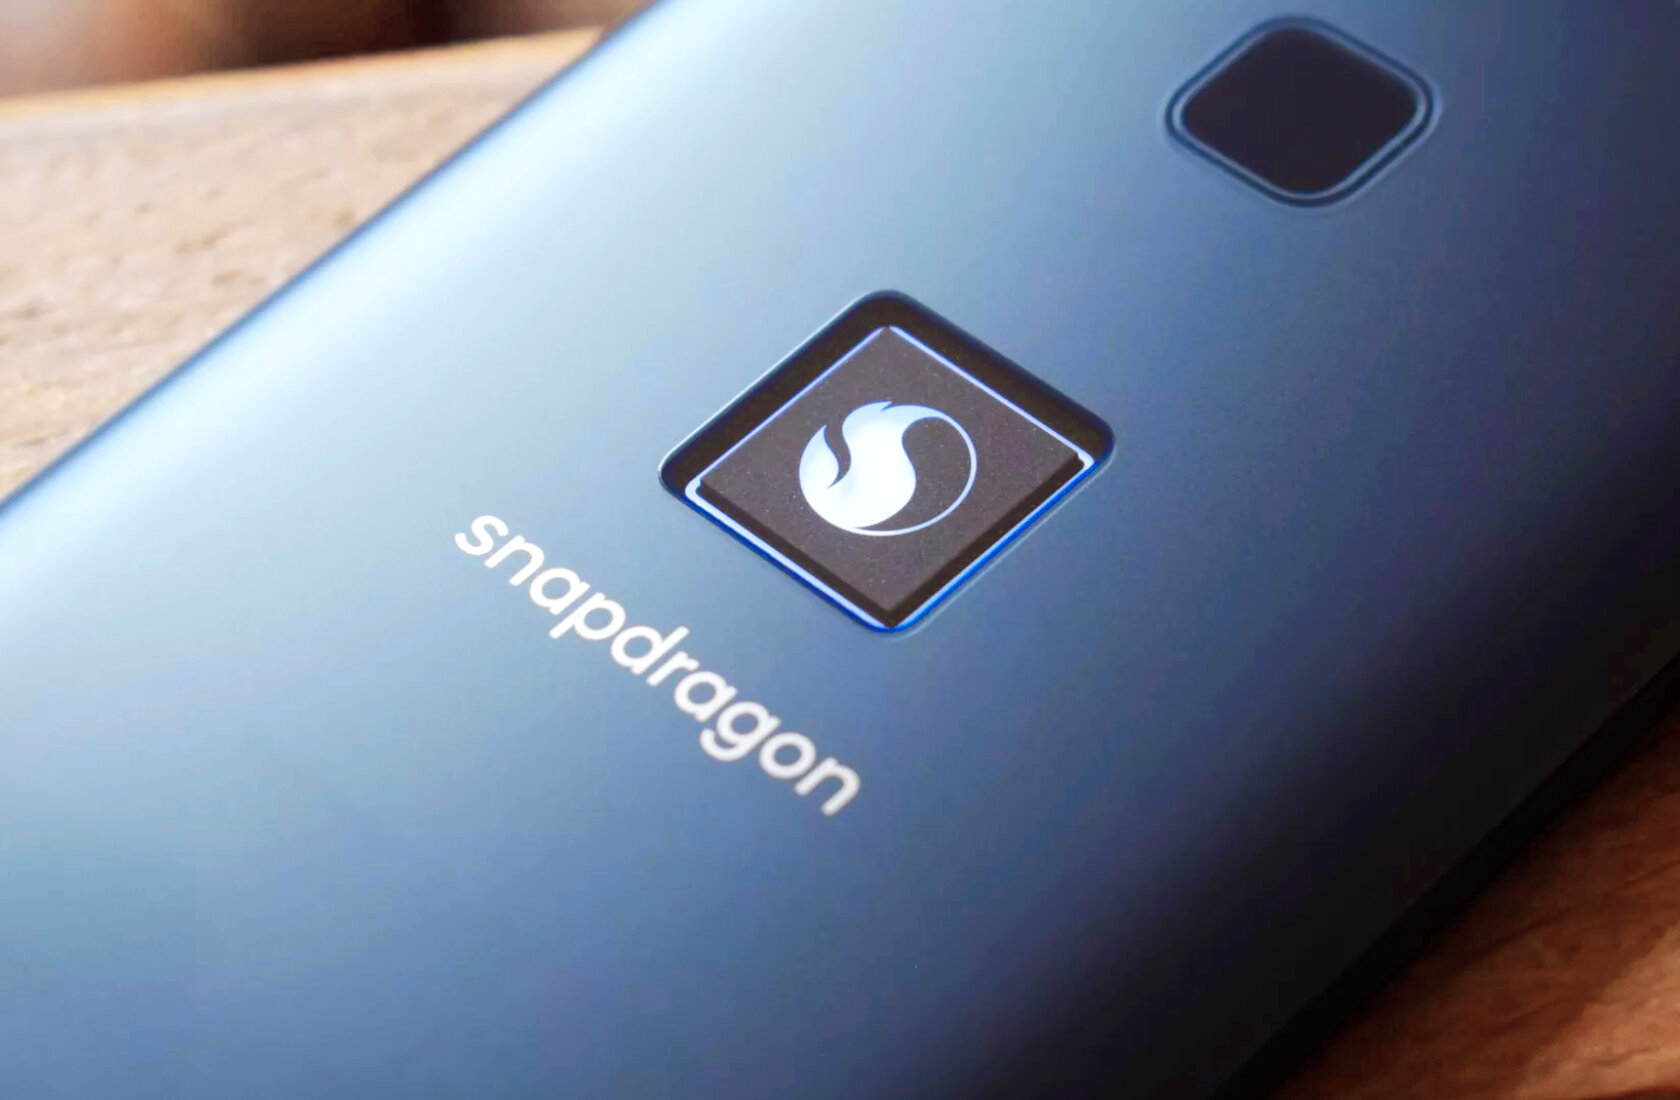 Производитель Snapdragon выпустил идеальный смартфон? Обзор новинки от Qualcomm